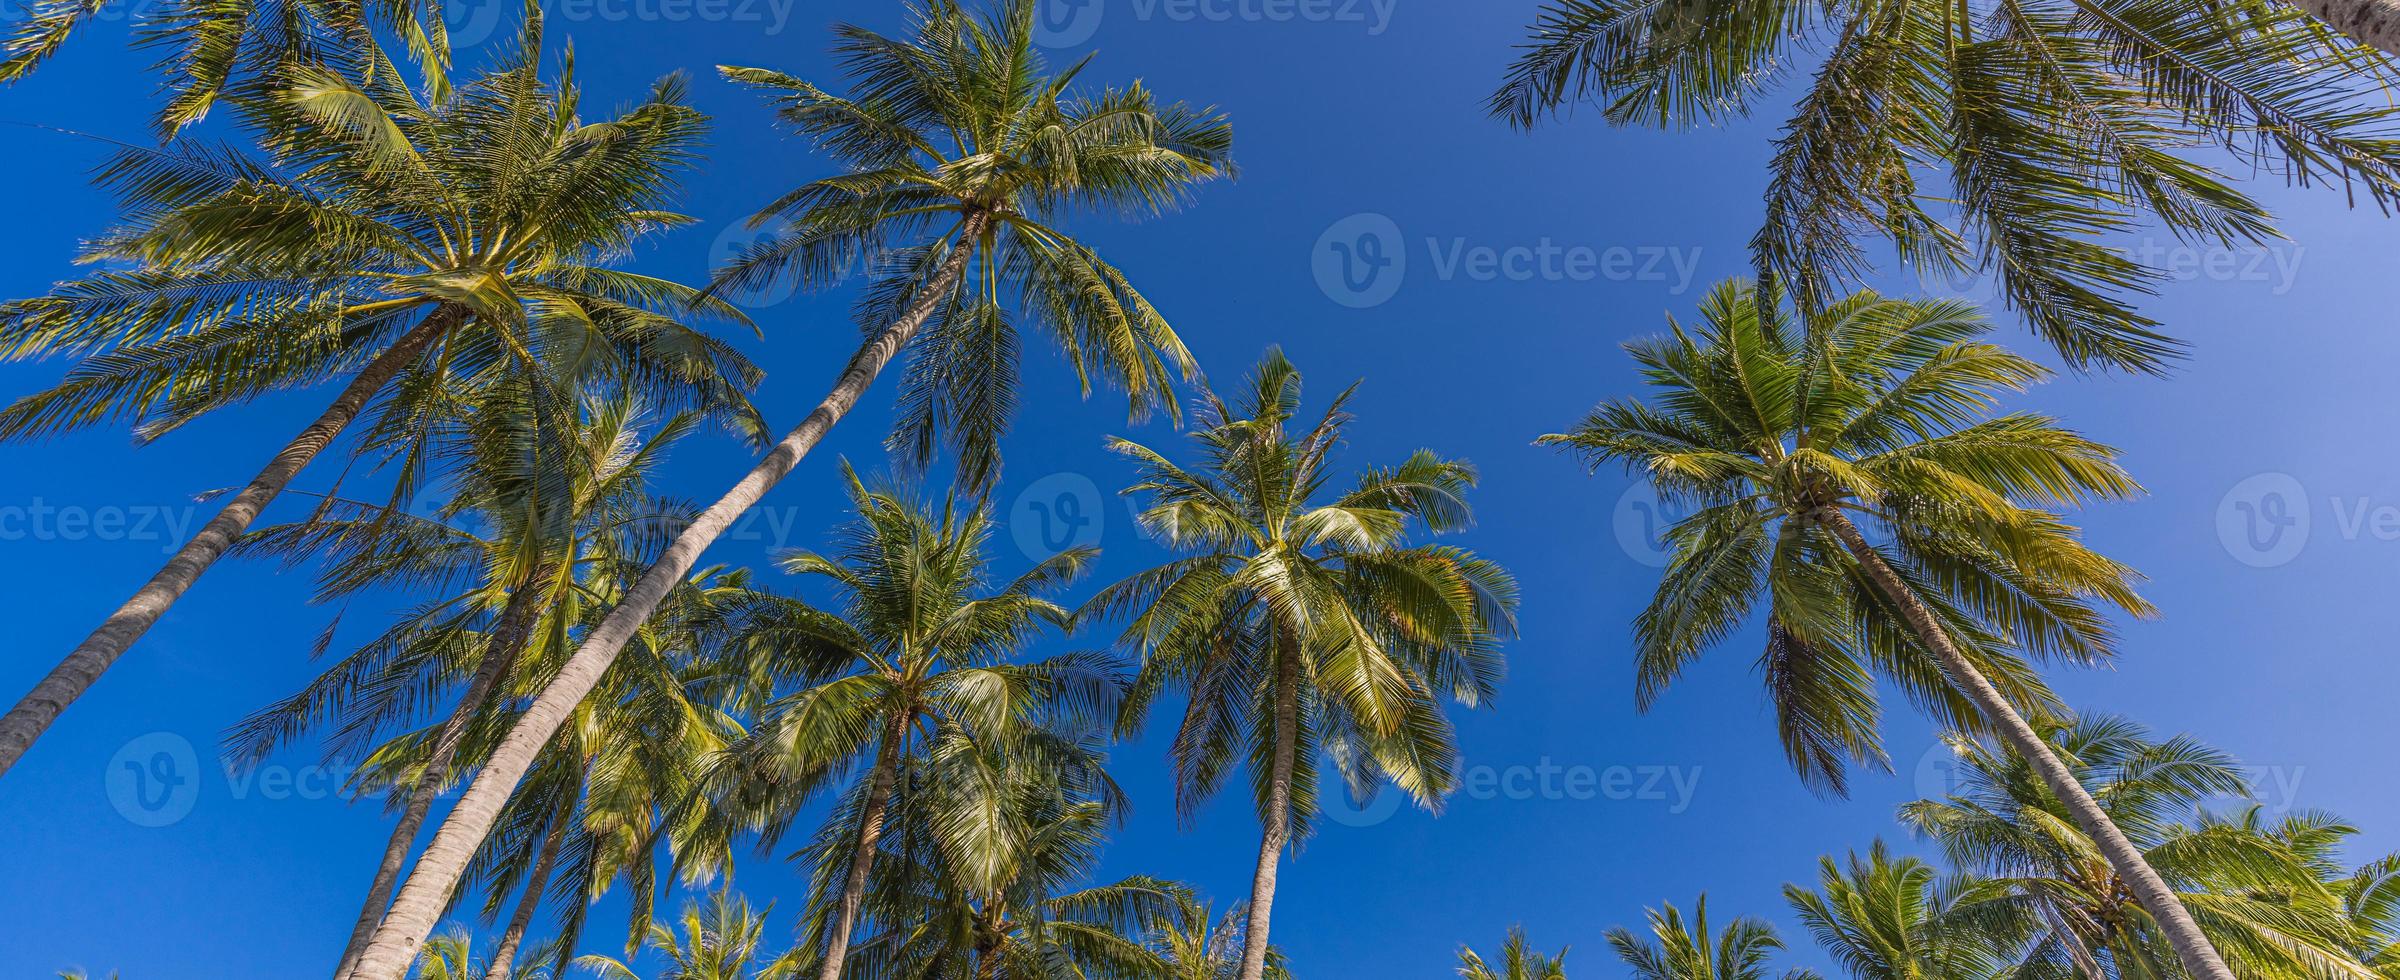 palmiers avec un ciel bleu ensoleillé. paysage naturel d'été exotique, panorama de la forêt tropicale. vue sur la nature de l'île. détente beau paysage panoramique. photo